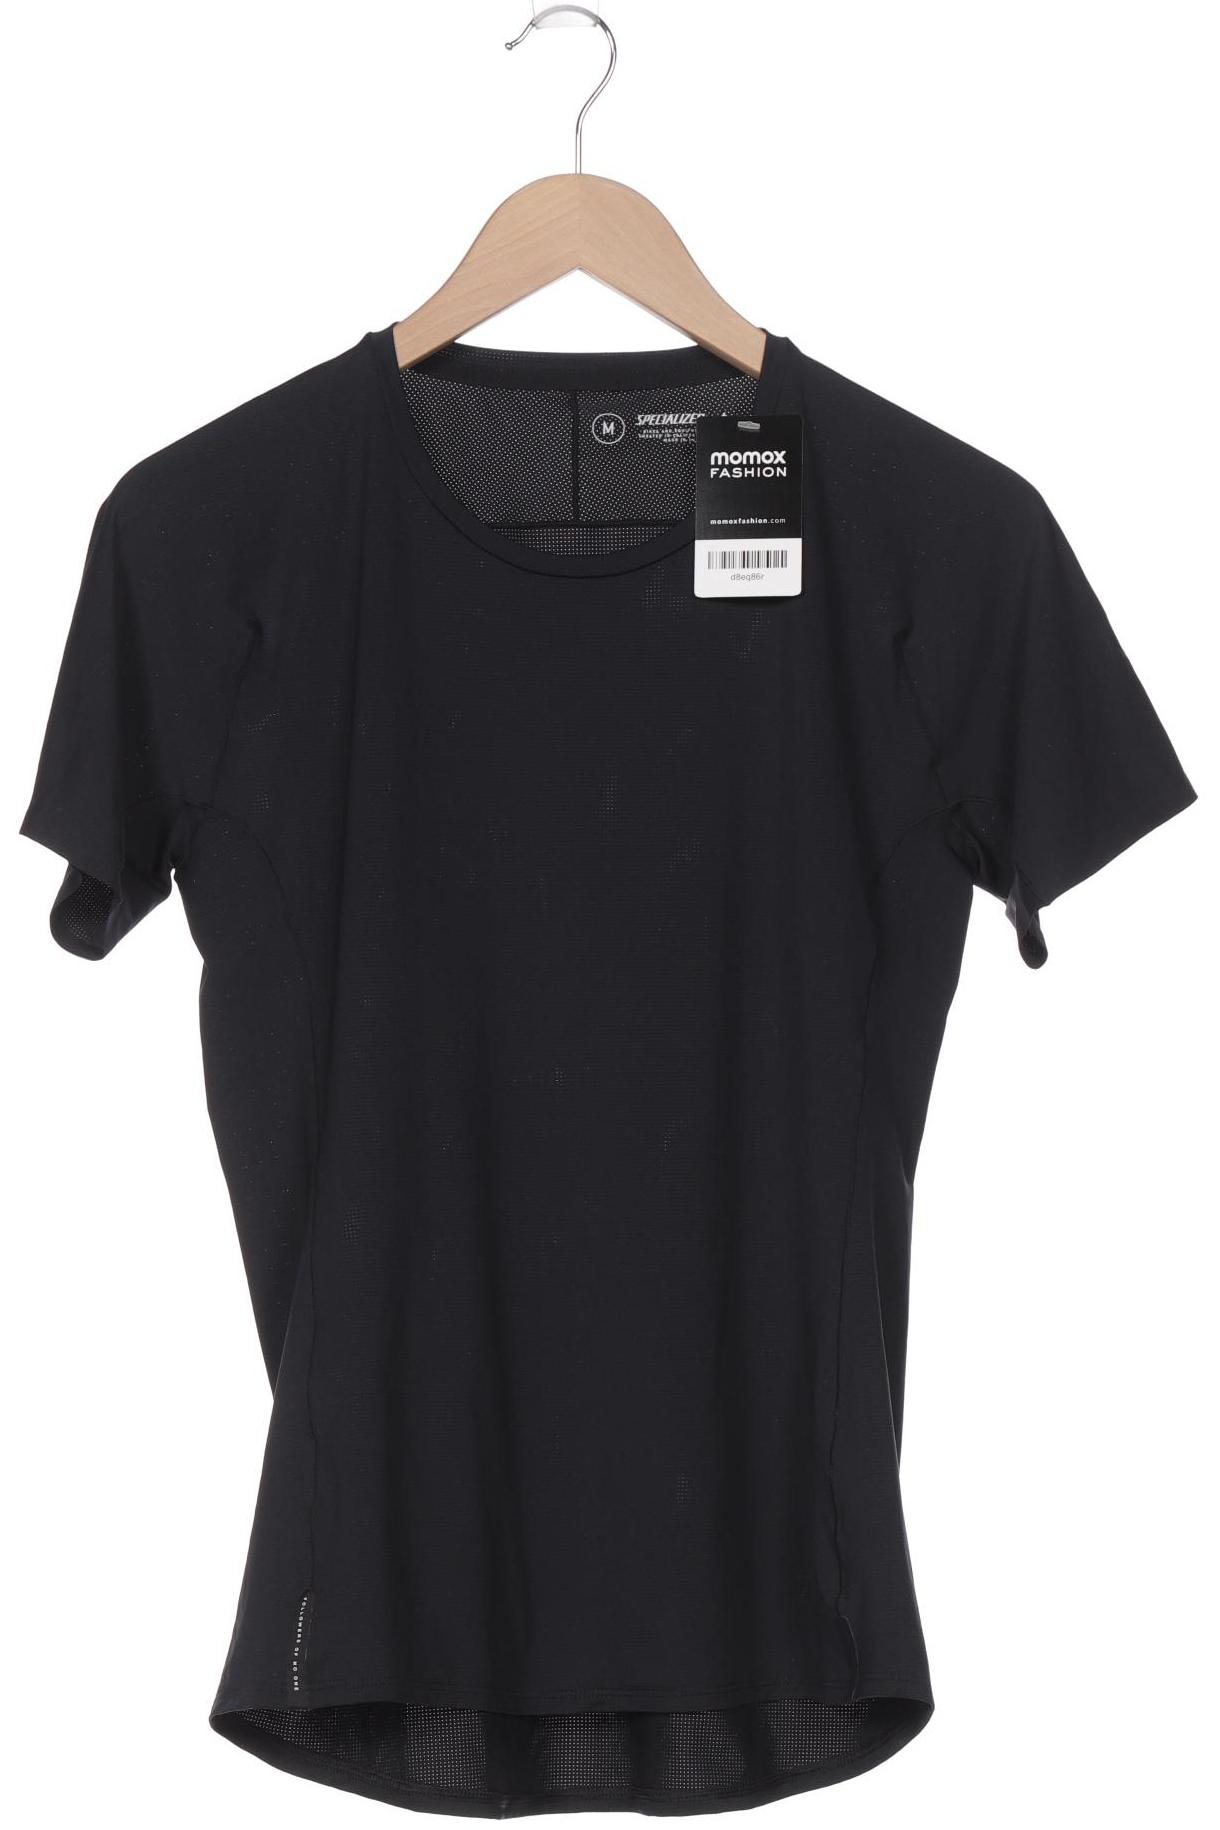 Specialized Damen T-Shirt, schwarz, Gr. 38 von Specialized